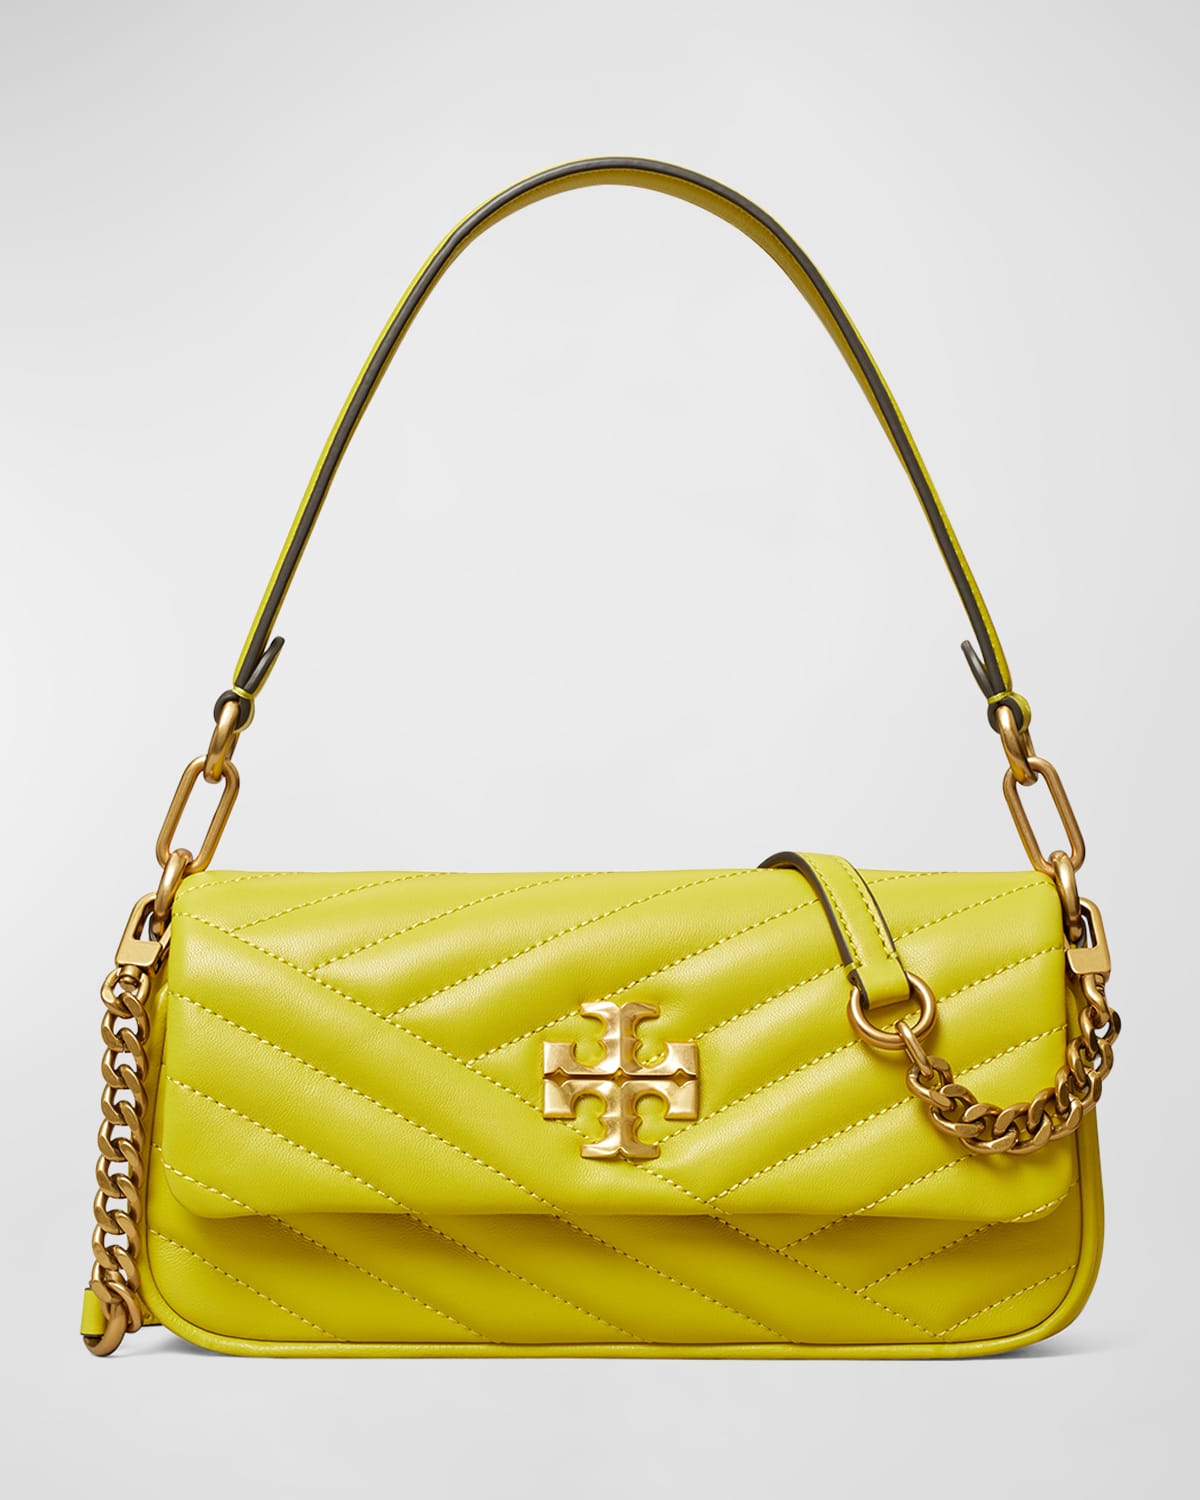 Tory Burch Yellow Handbag | Neiman Marcus